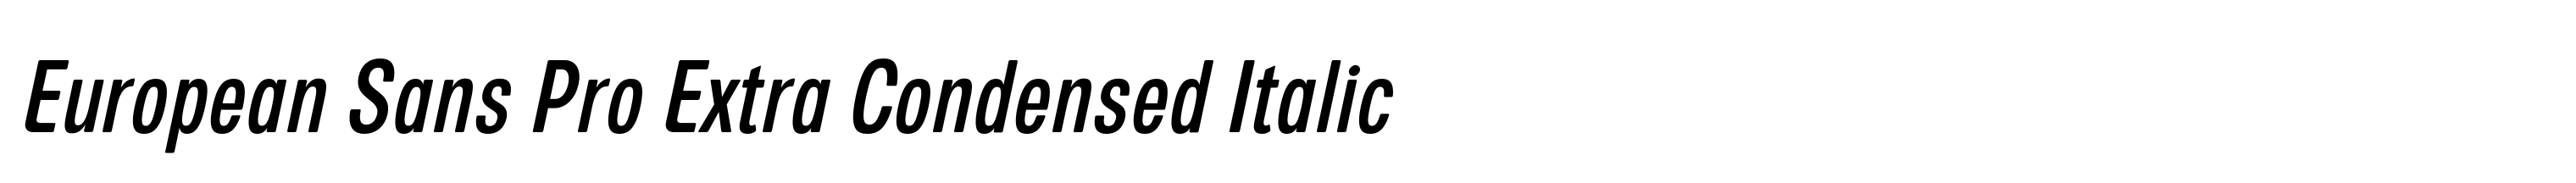 European Sans Pro Extra Condensed Italic